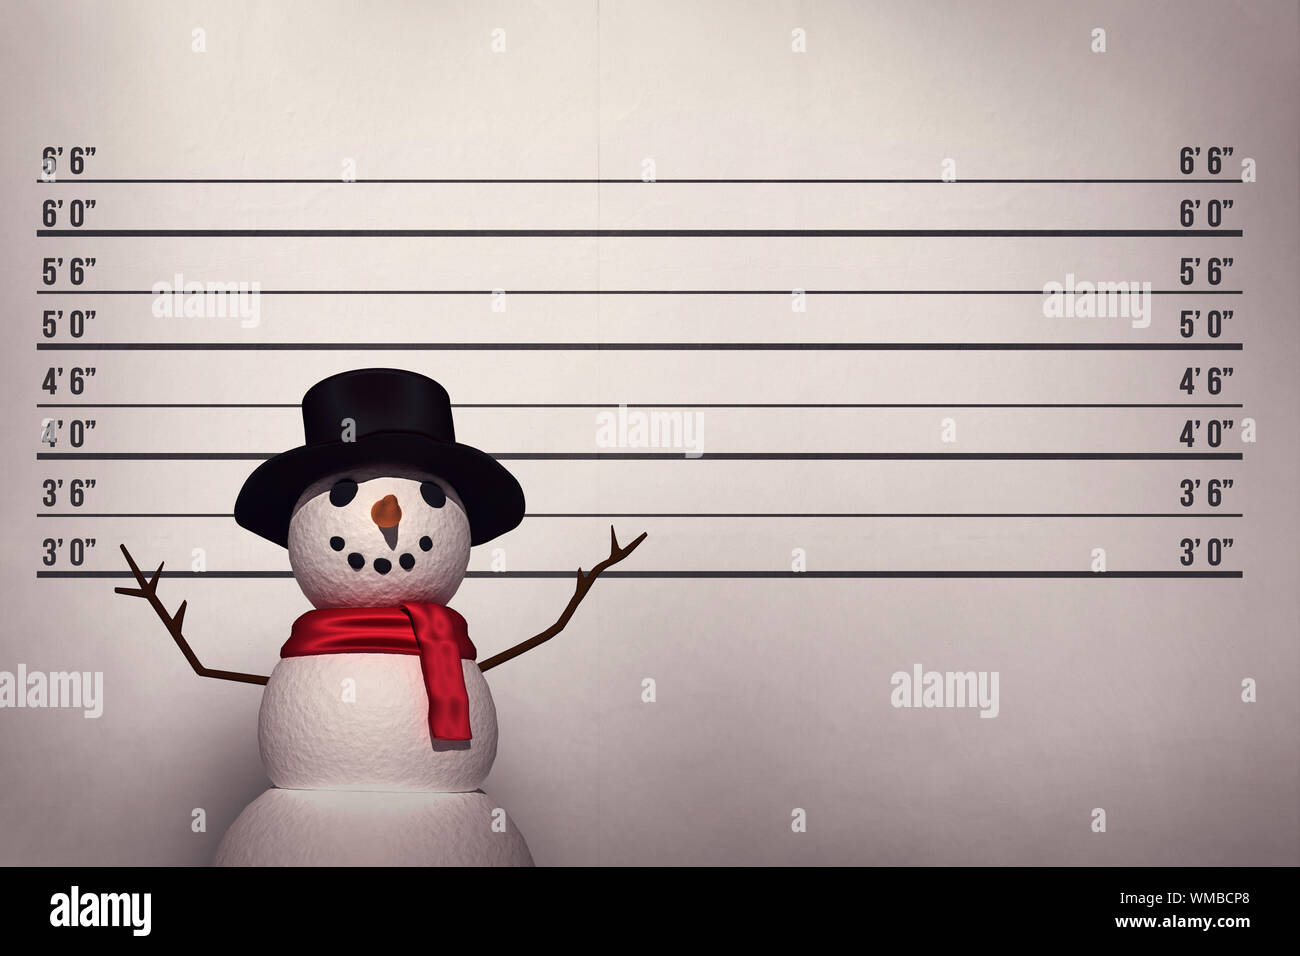 Le Snowman contre mug shot background Banque D'Images